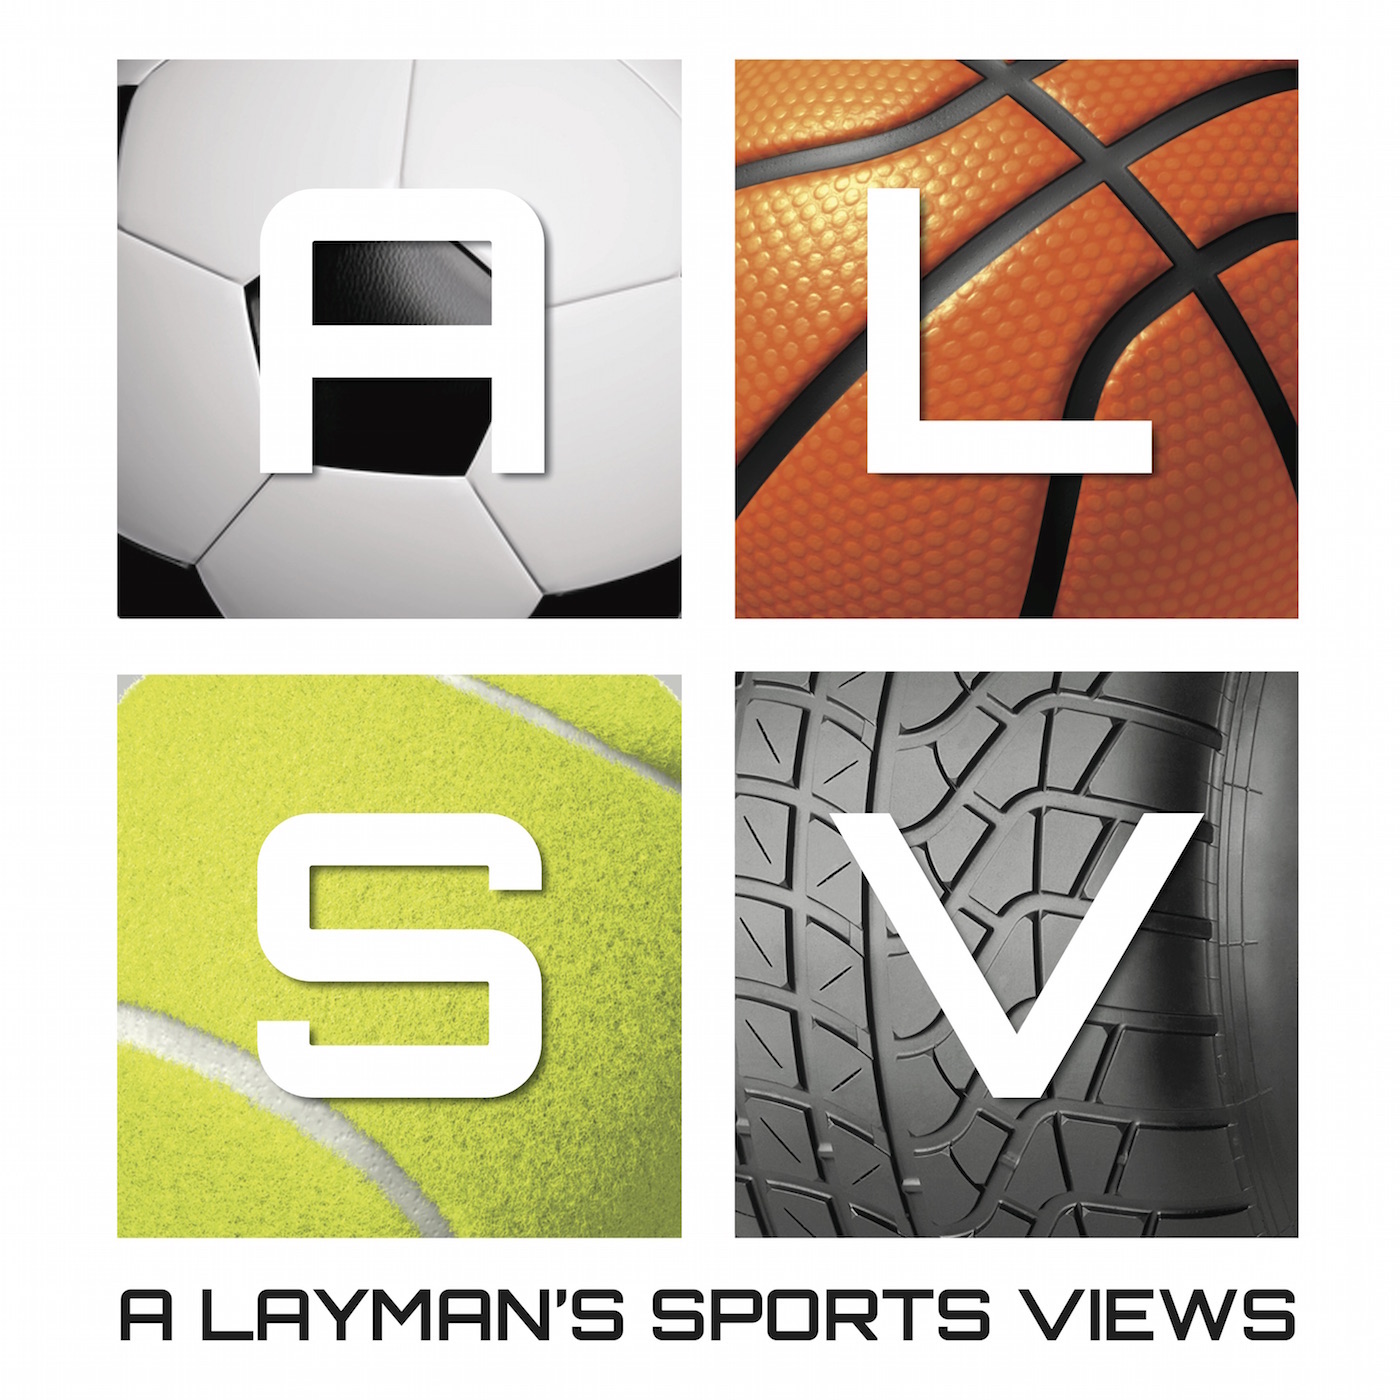 A Layman's Sports Views